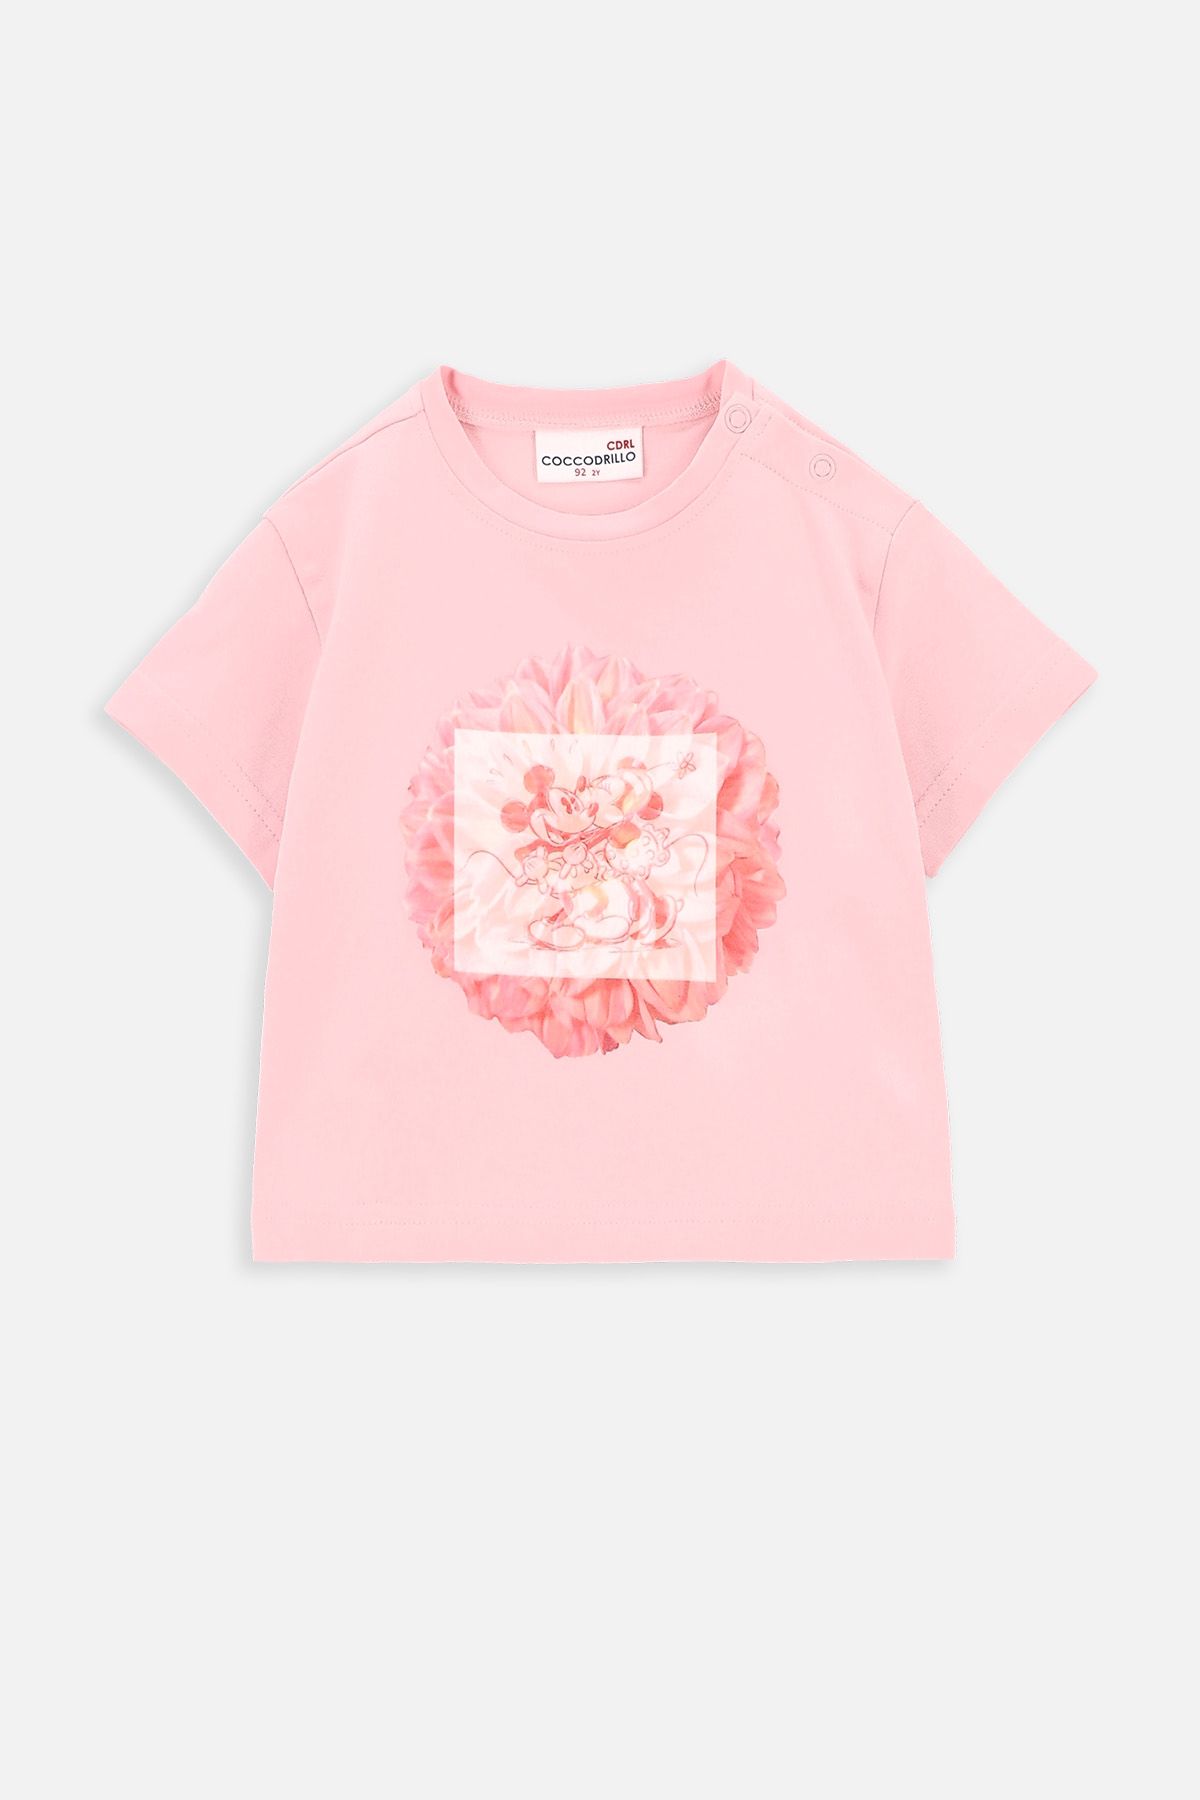 T-shirt z krótkim rękawem pudrowy róż z nadrukiem, licencja MICKEY MOUSE 2222144